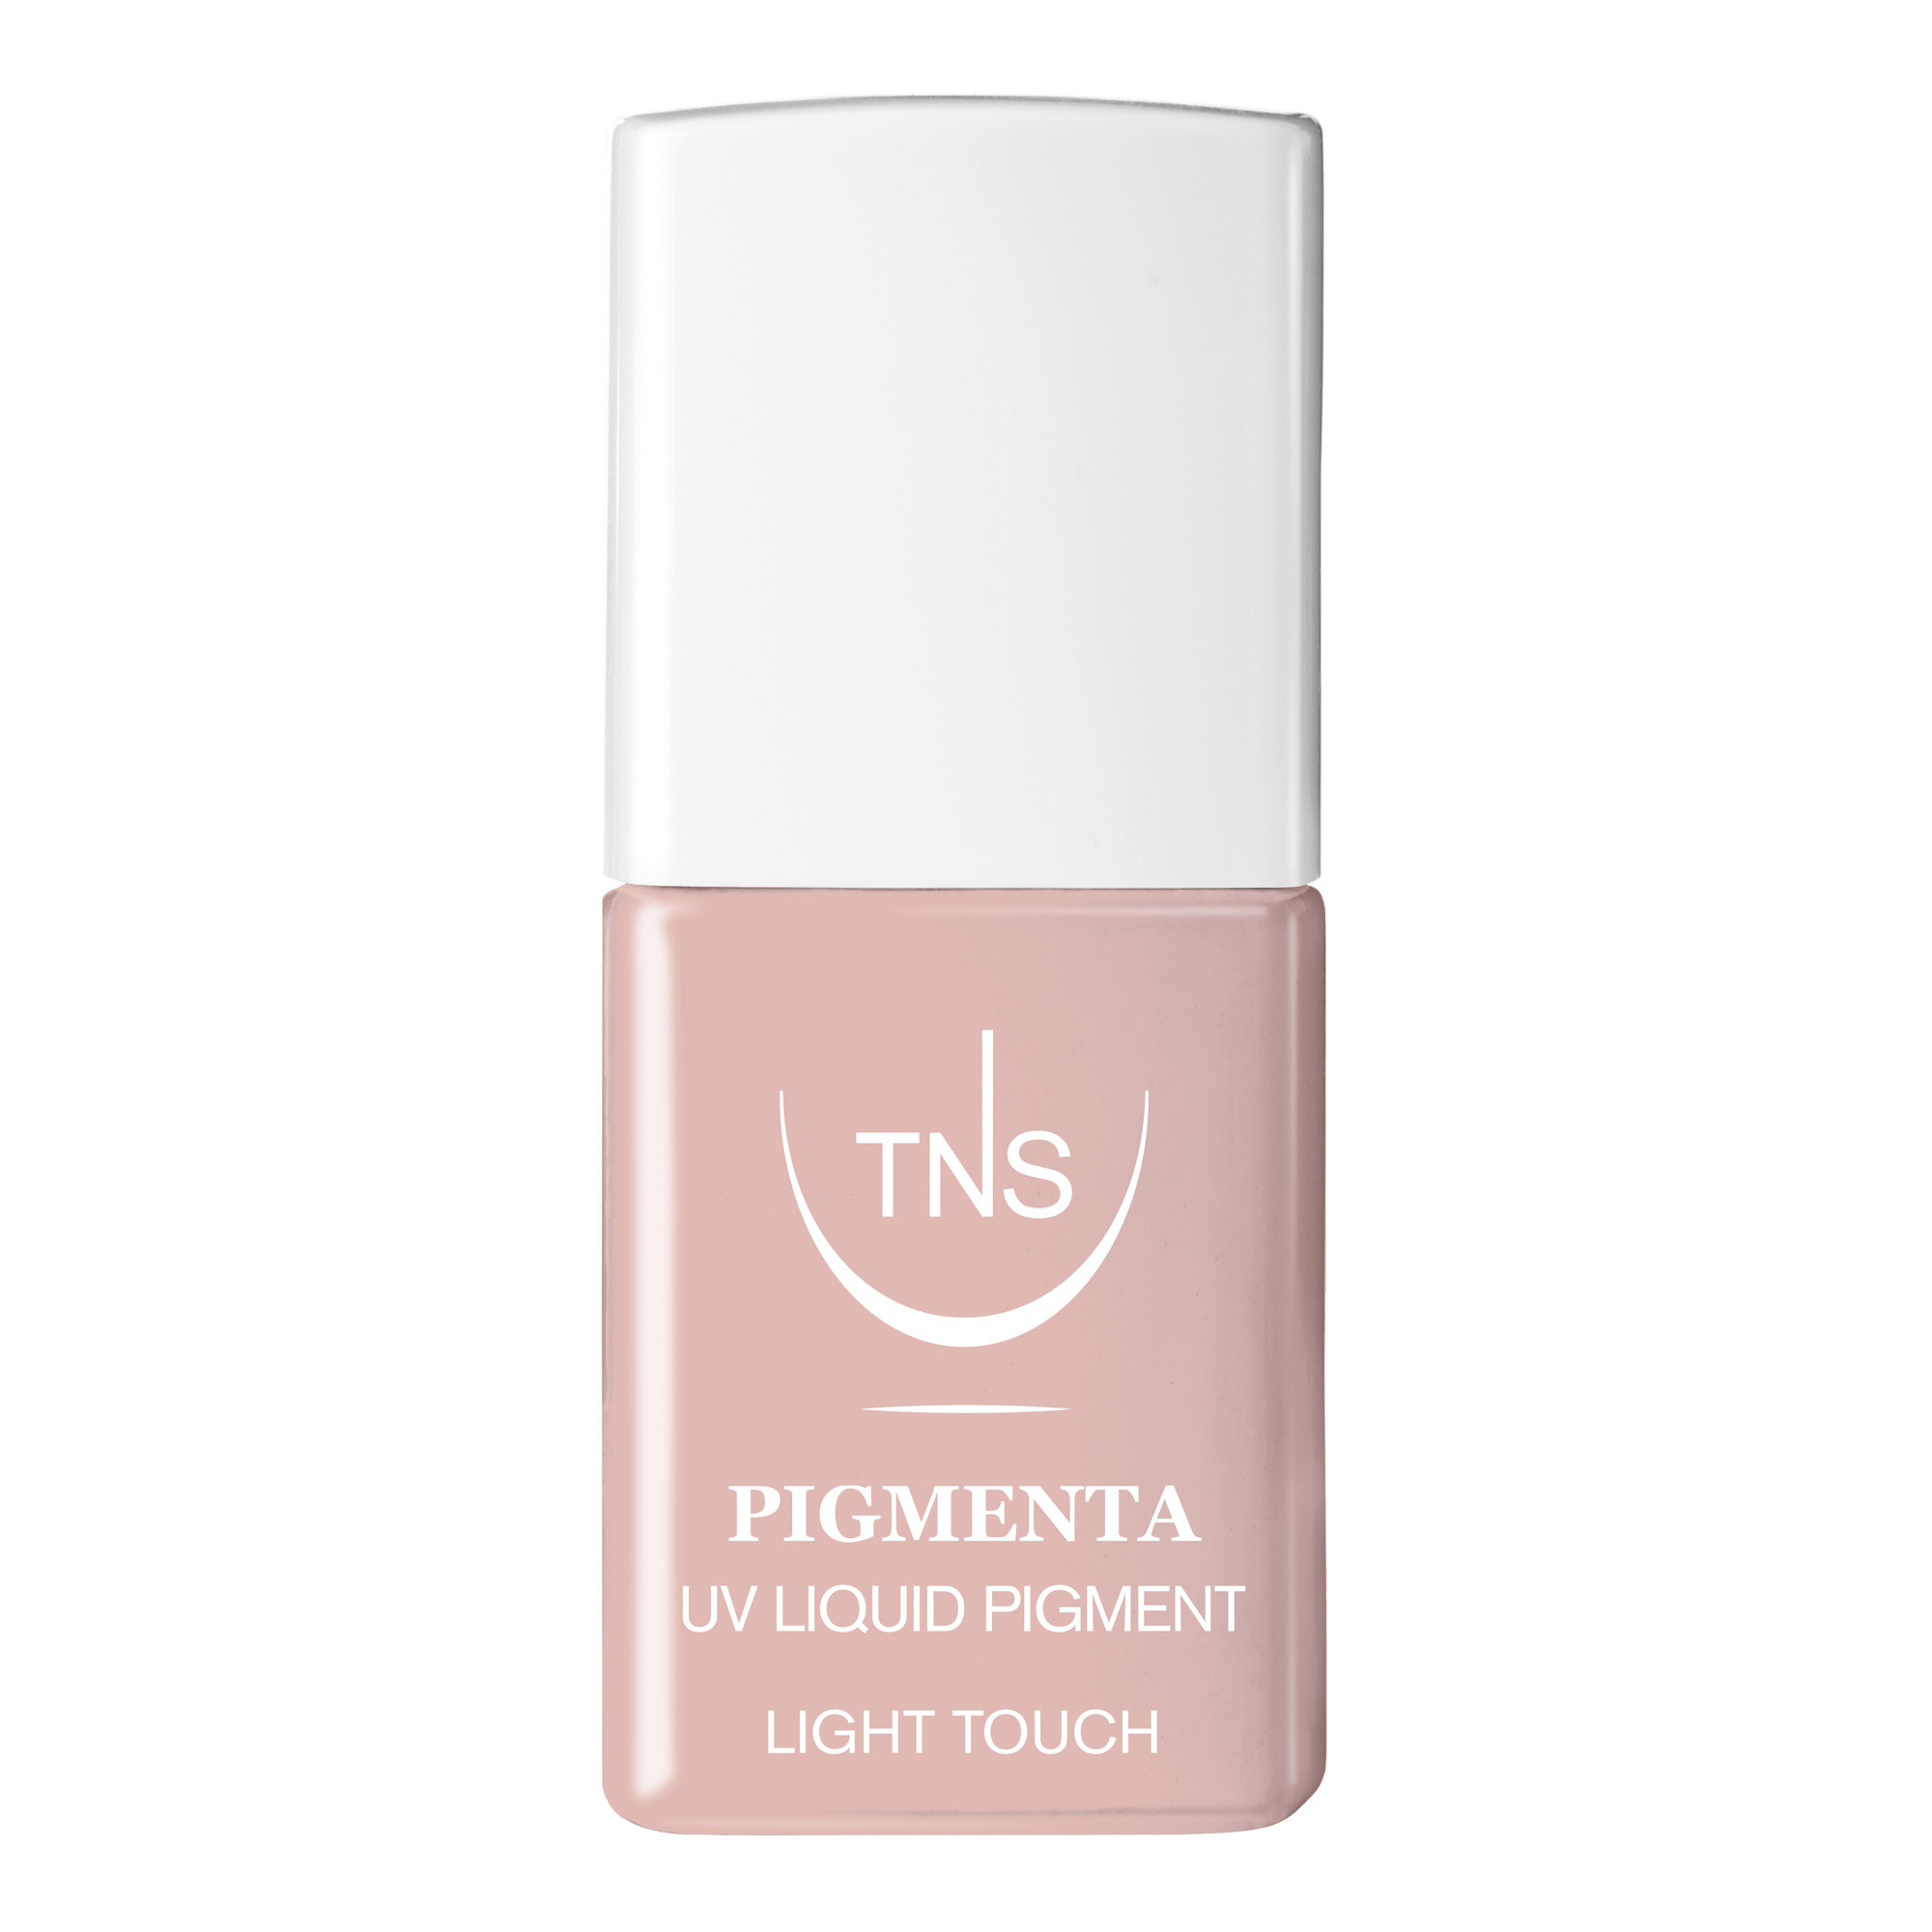 Pigmento Liquido UV Light Touch rosa chiaro 10 ml Pigmenta TNS